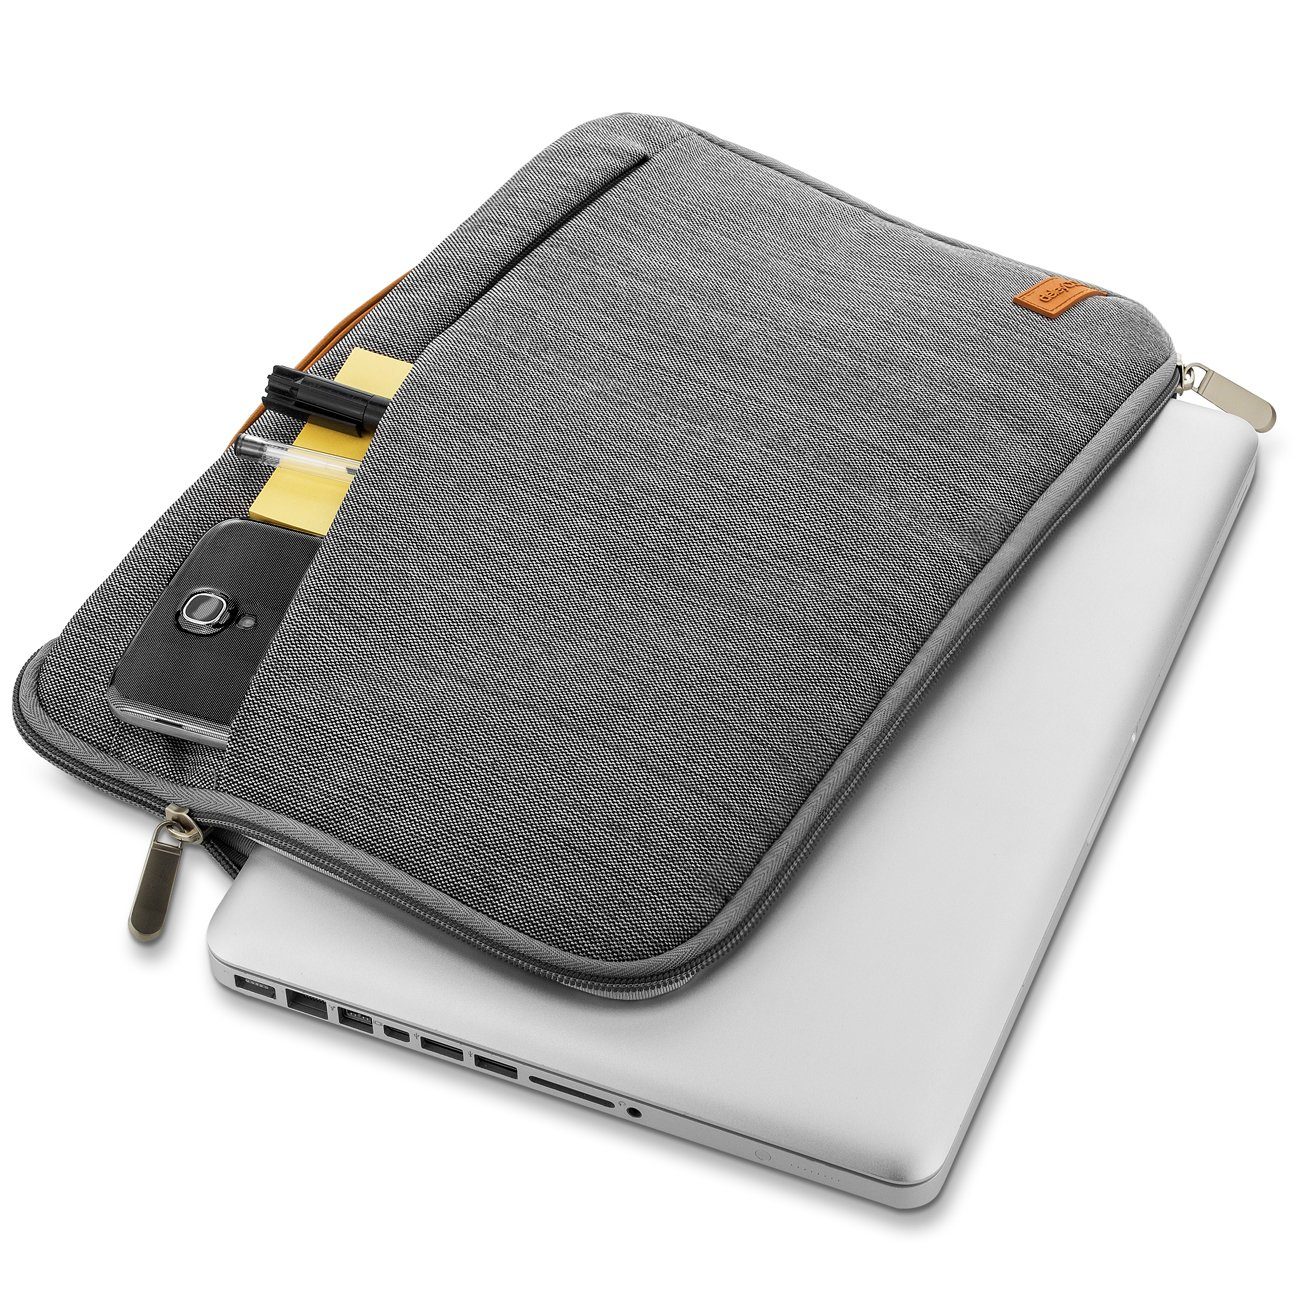 / deleyCON für Laptop Businesstasche deleyCON (39,6cm) Notebooktasche bis - 15,6" Notebook